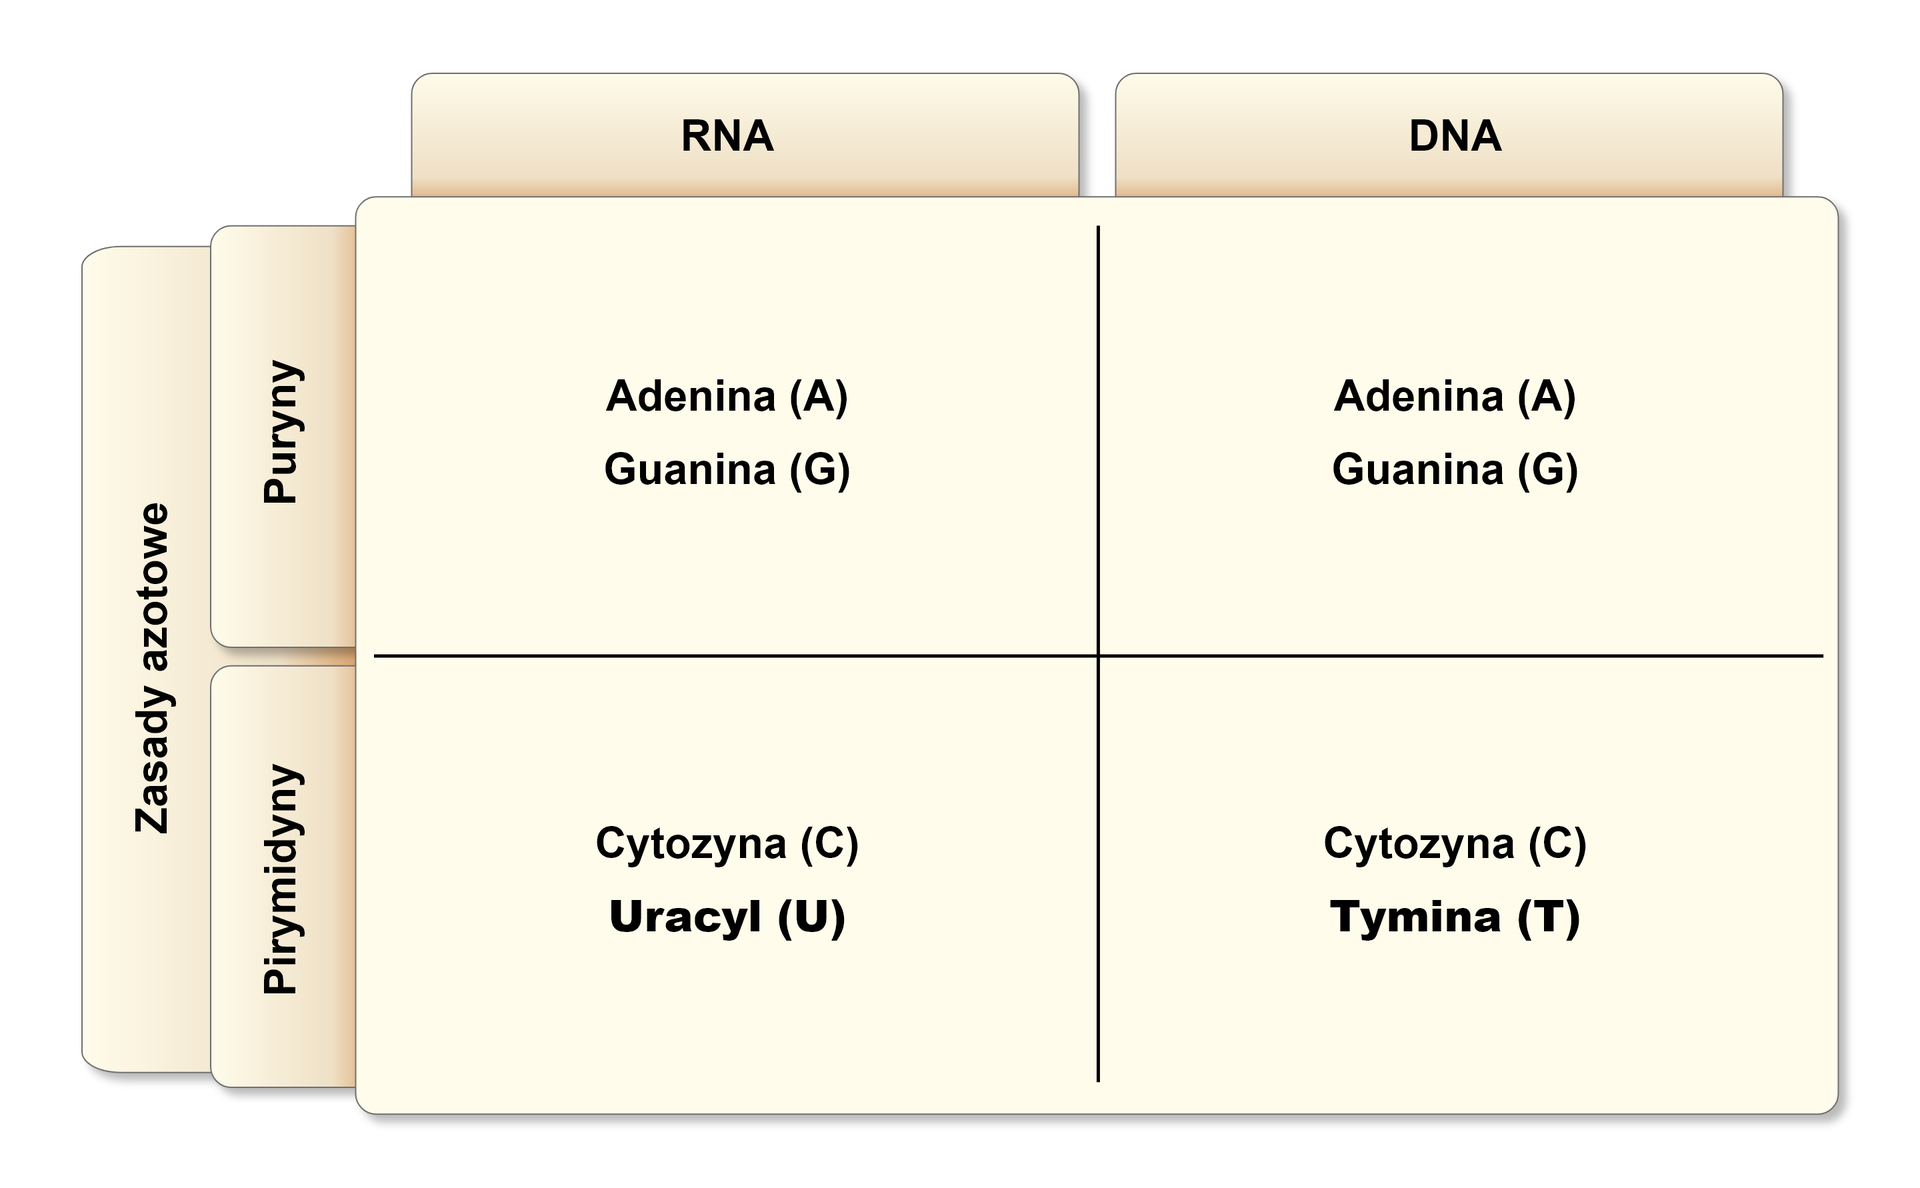 Tabela ukazuje zasady azotowe wchodzące w skład nukleotydów w DNA i RNA. W pierwszym wierszu znajdują się puryny: w RNA jest to adenina (A) i guanina (G), w DNA adenina (A) i guanina (G). W drugim wierszu znajdują się pirymidyny: w RNA cytozyna (C) i uracyl (U), w DNA cytozyna (C) i tymina (T). 